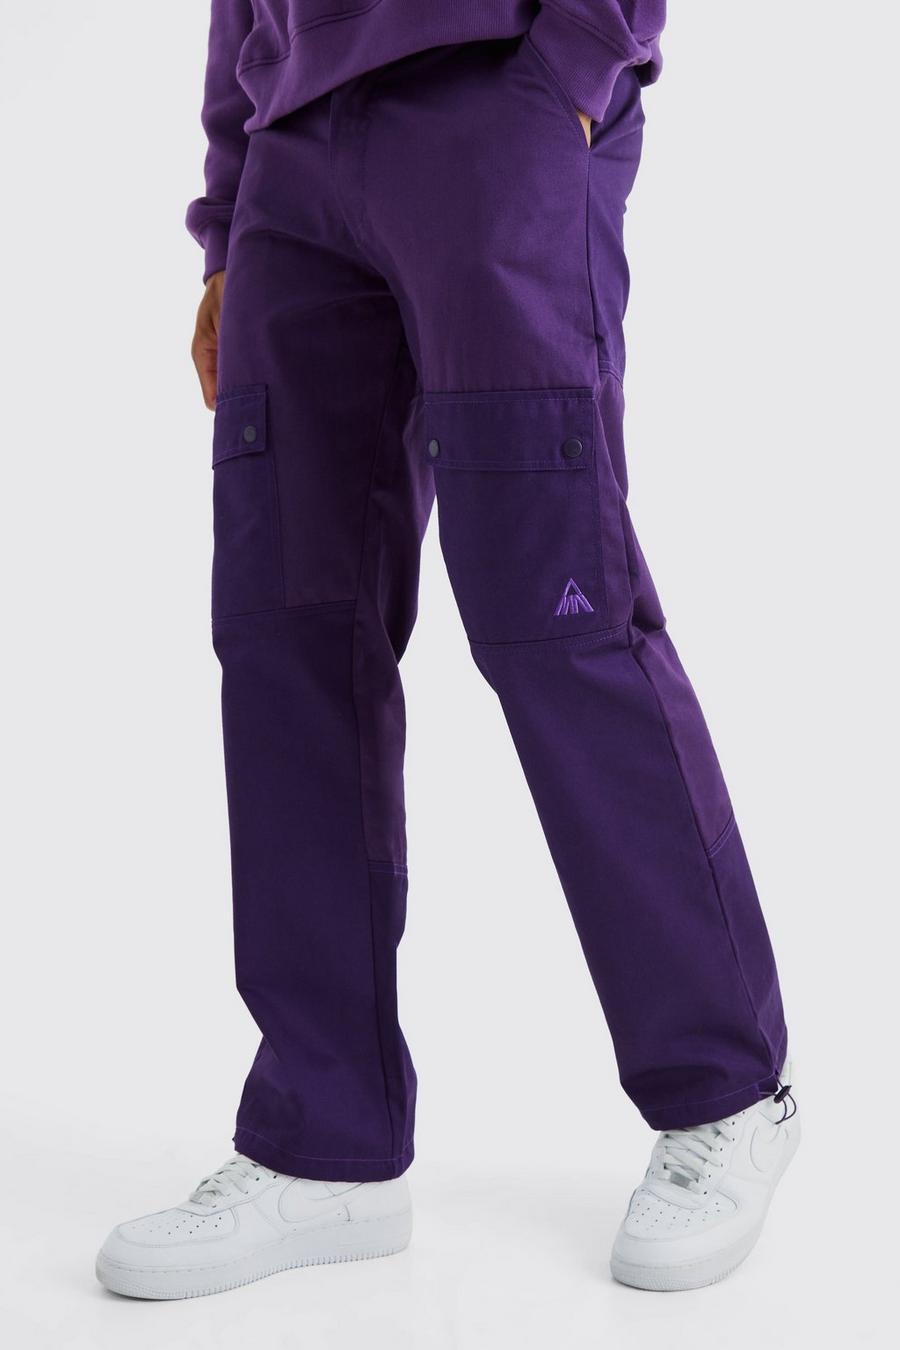 Pantalón Tall cargo holgado con colores en bloque y marca, Purple